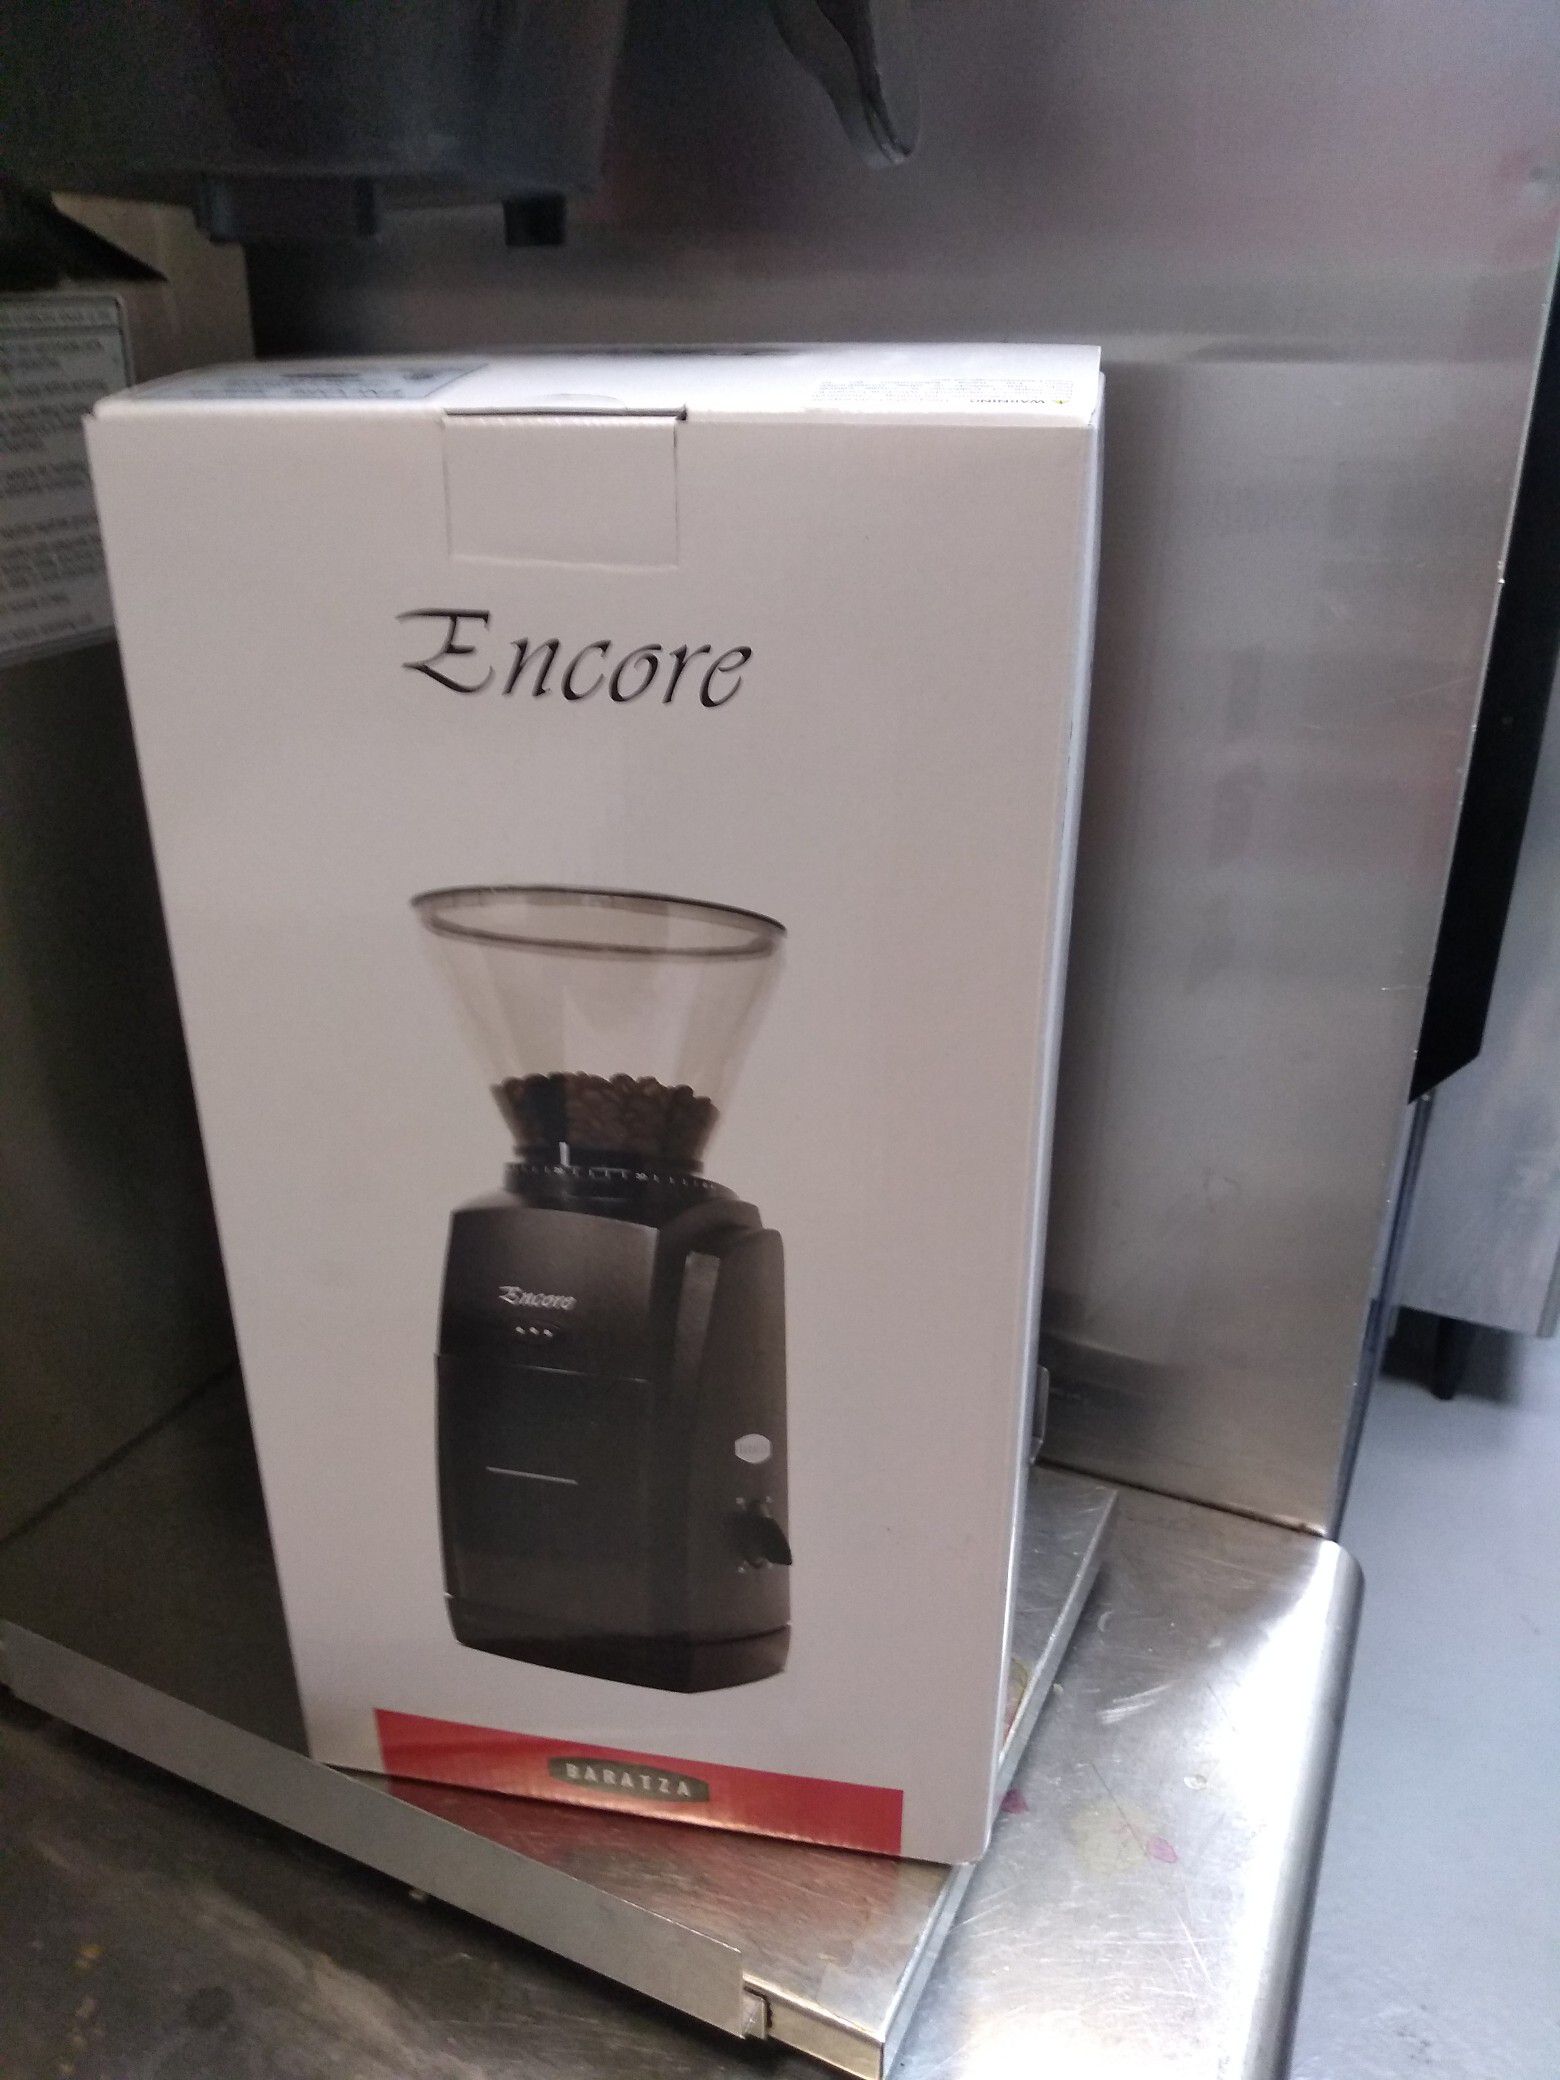 Encore coffee grinder